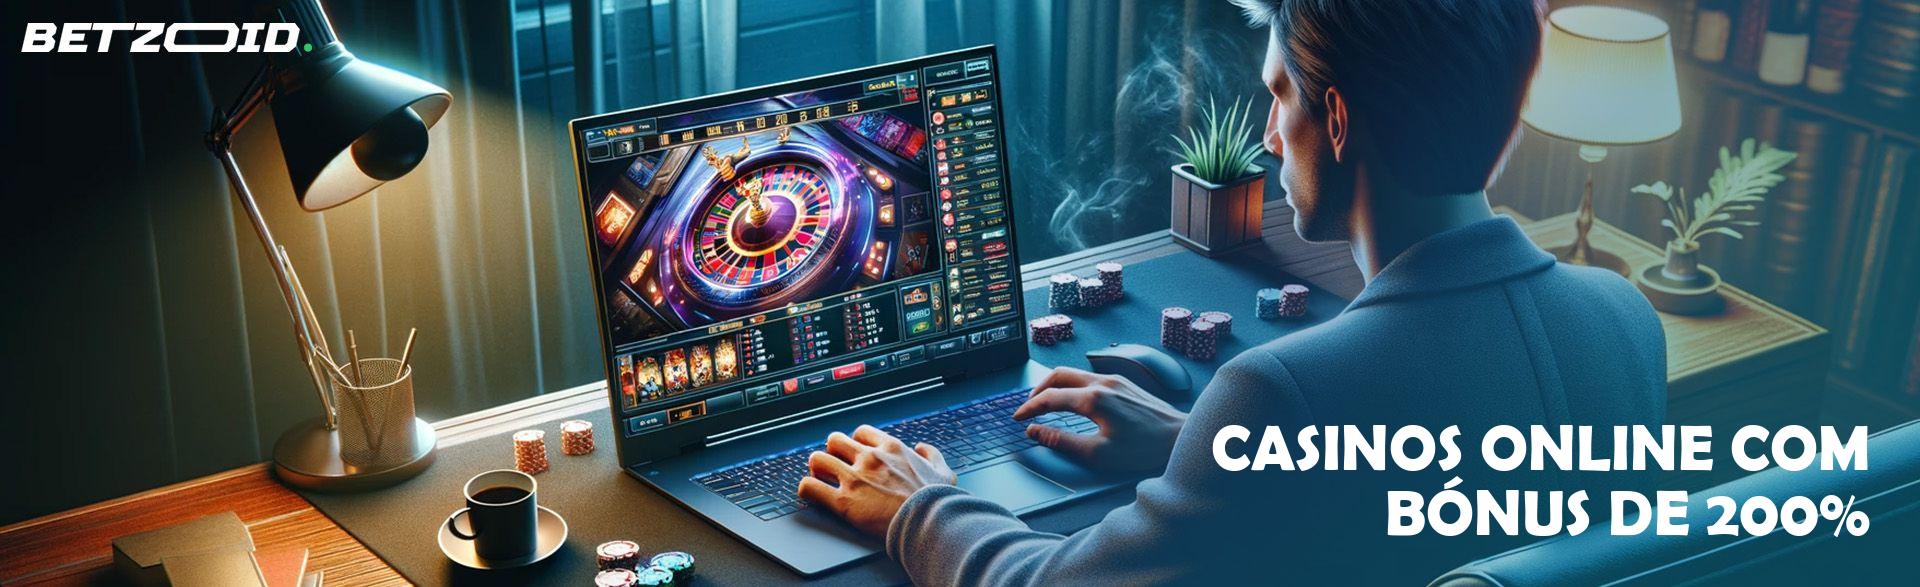 Casinos Online com Bónus de 200%.